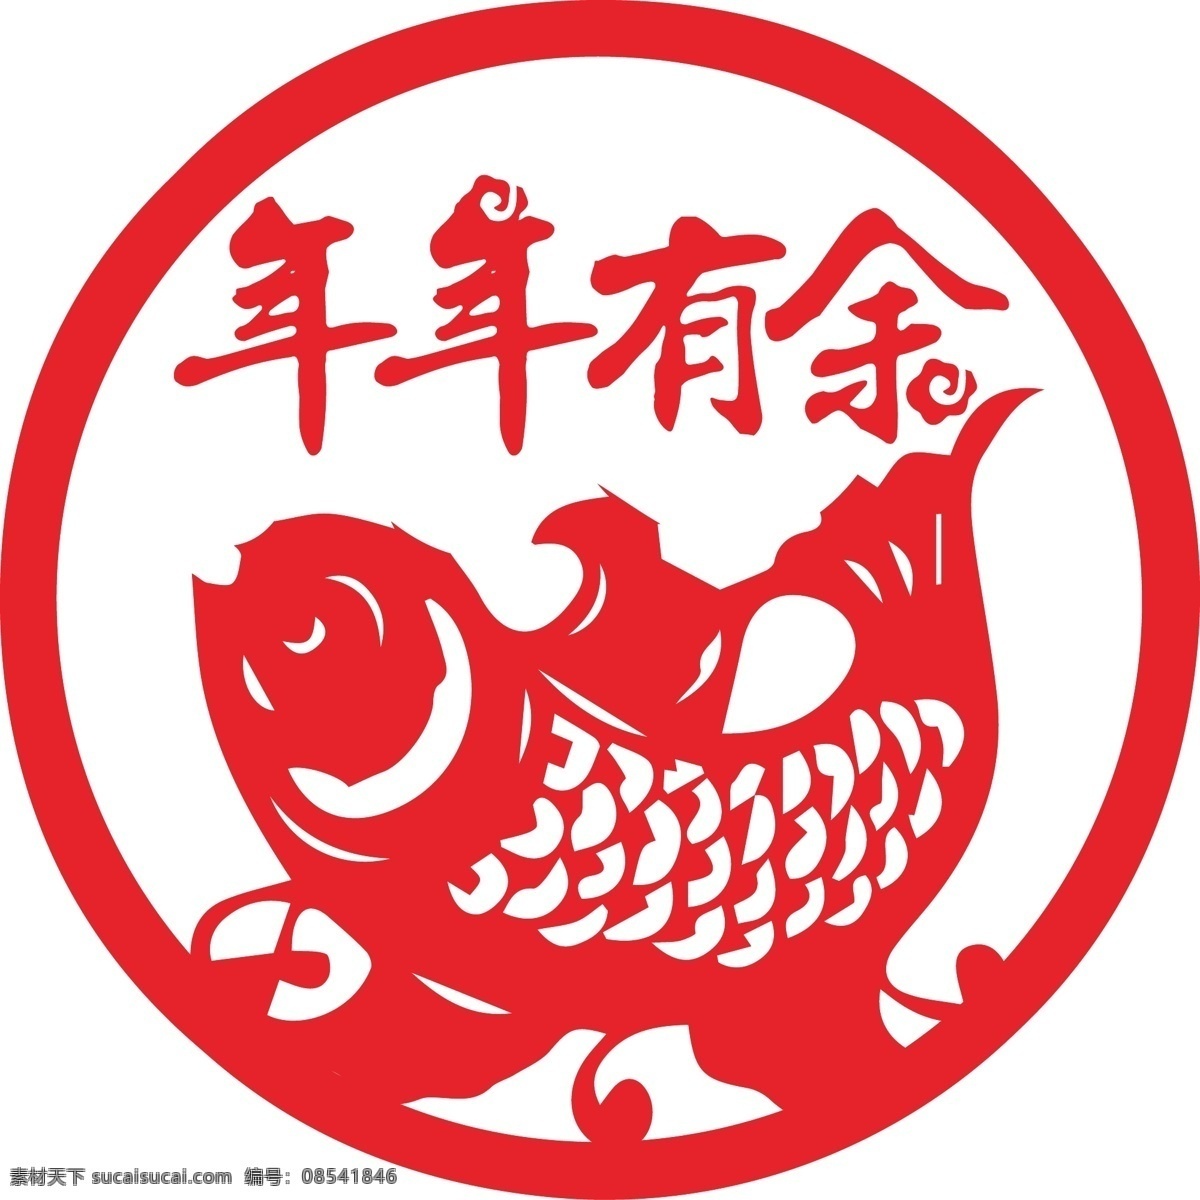 窗花 剪纸 年年有余 春节 福字窗花 新年 中国传统文化 窗花剪纸 鱼 剪鱼